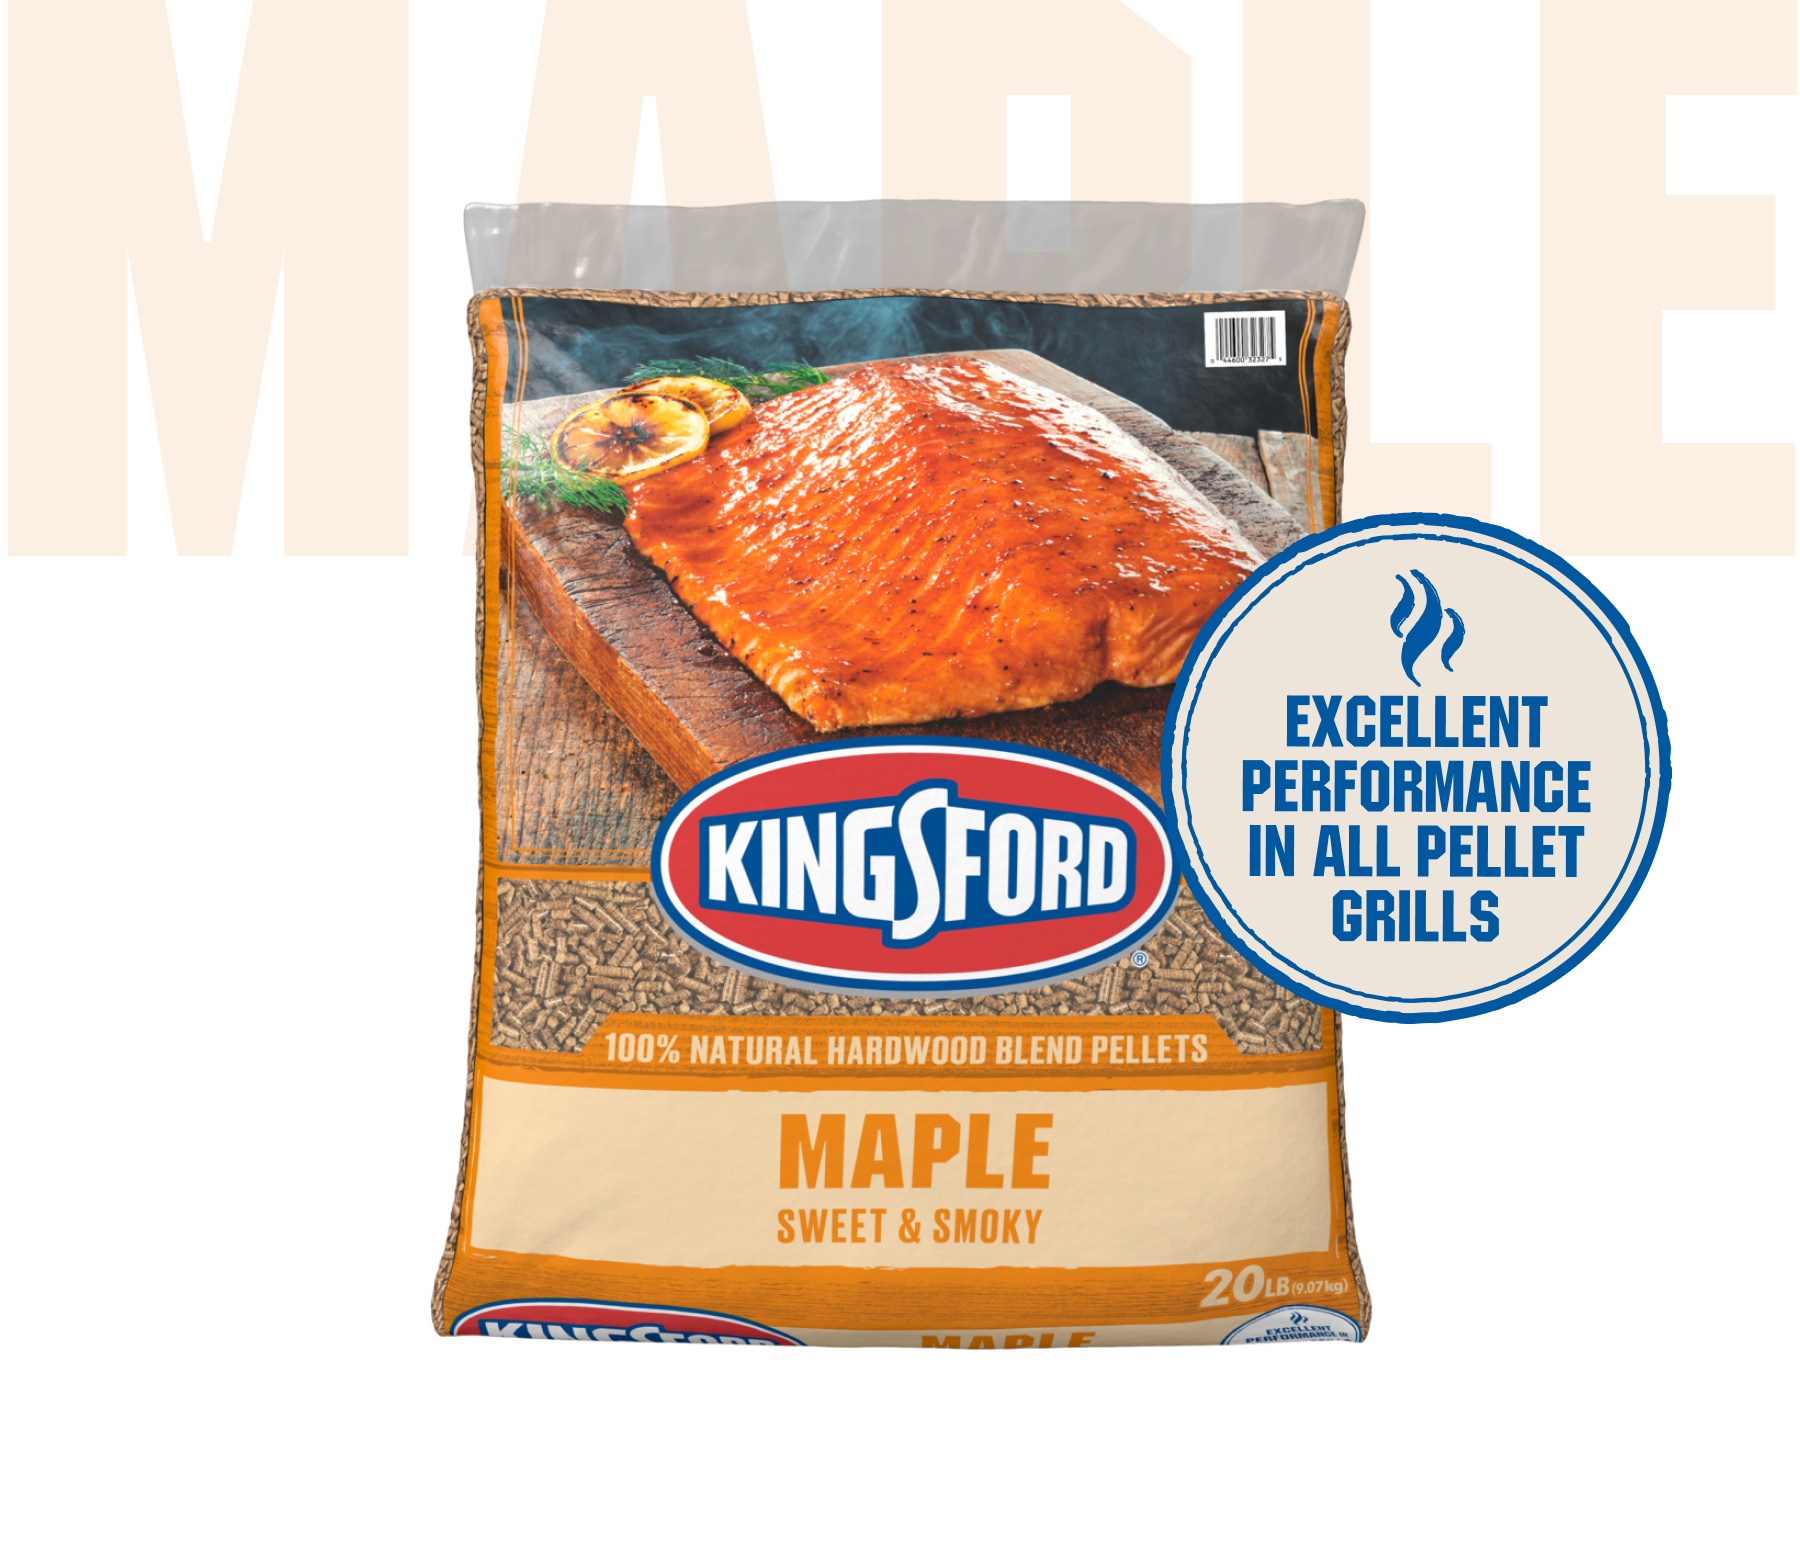 Kingsford® 100% Natural Hardwood Blend Pellets, Maple, 20 lb